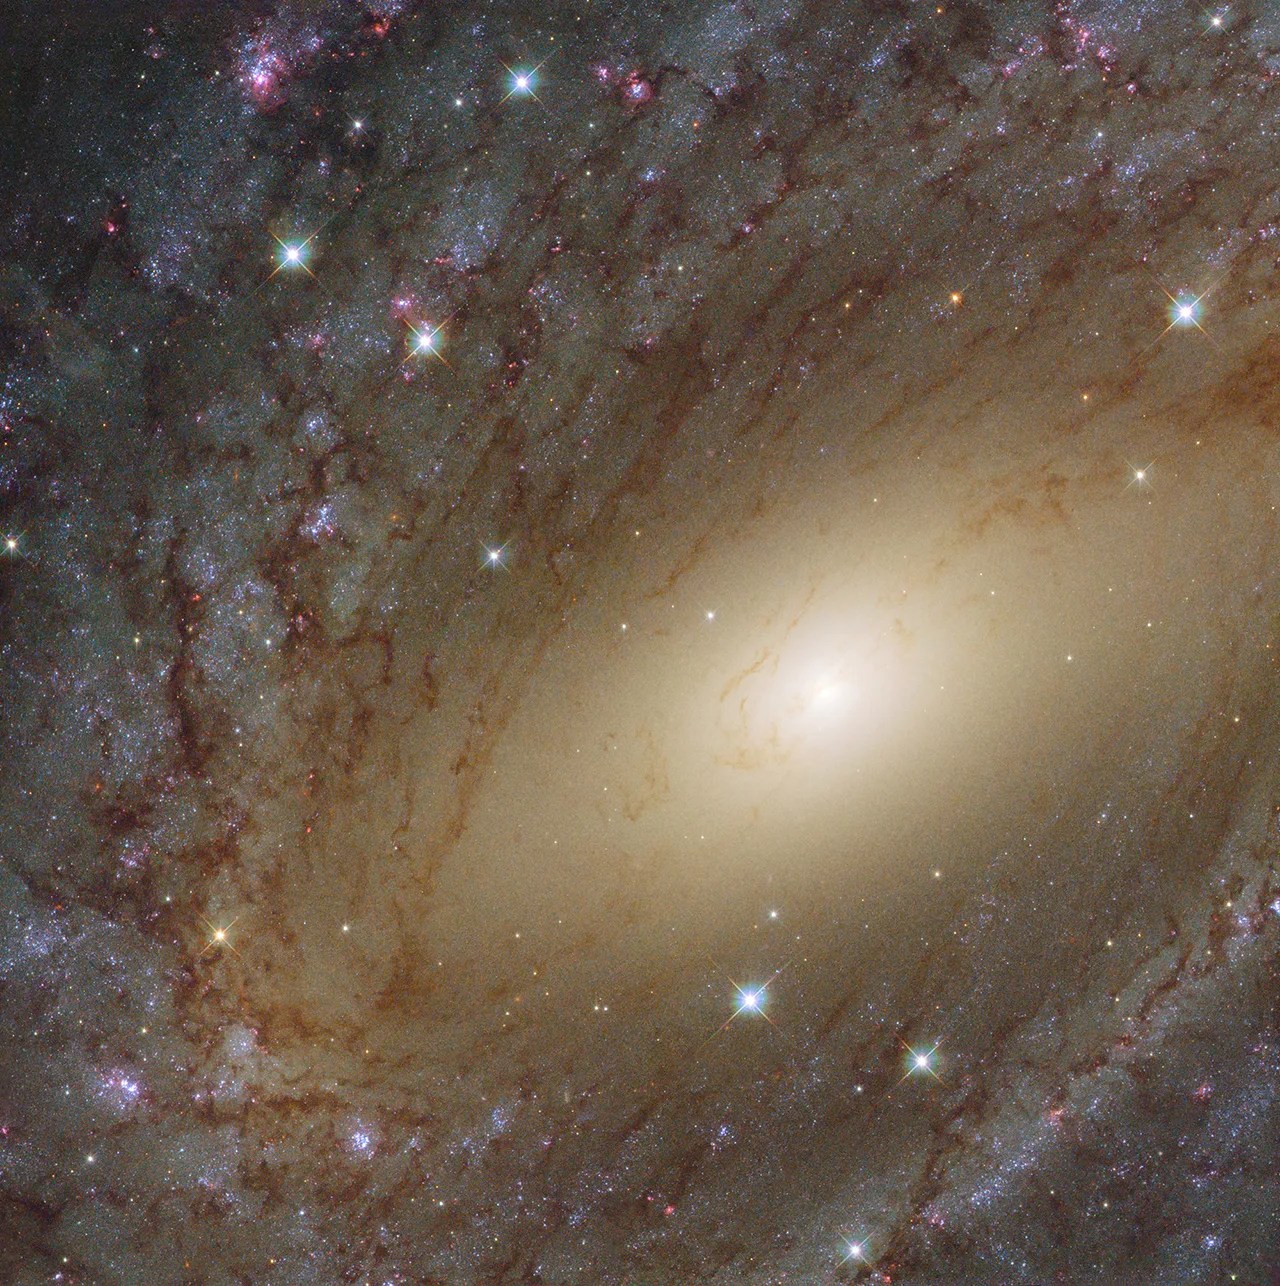 Hubble image of ngc 6744